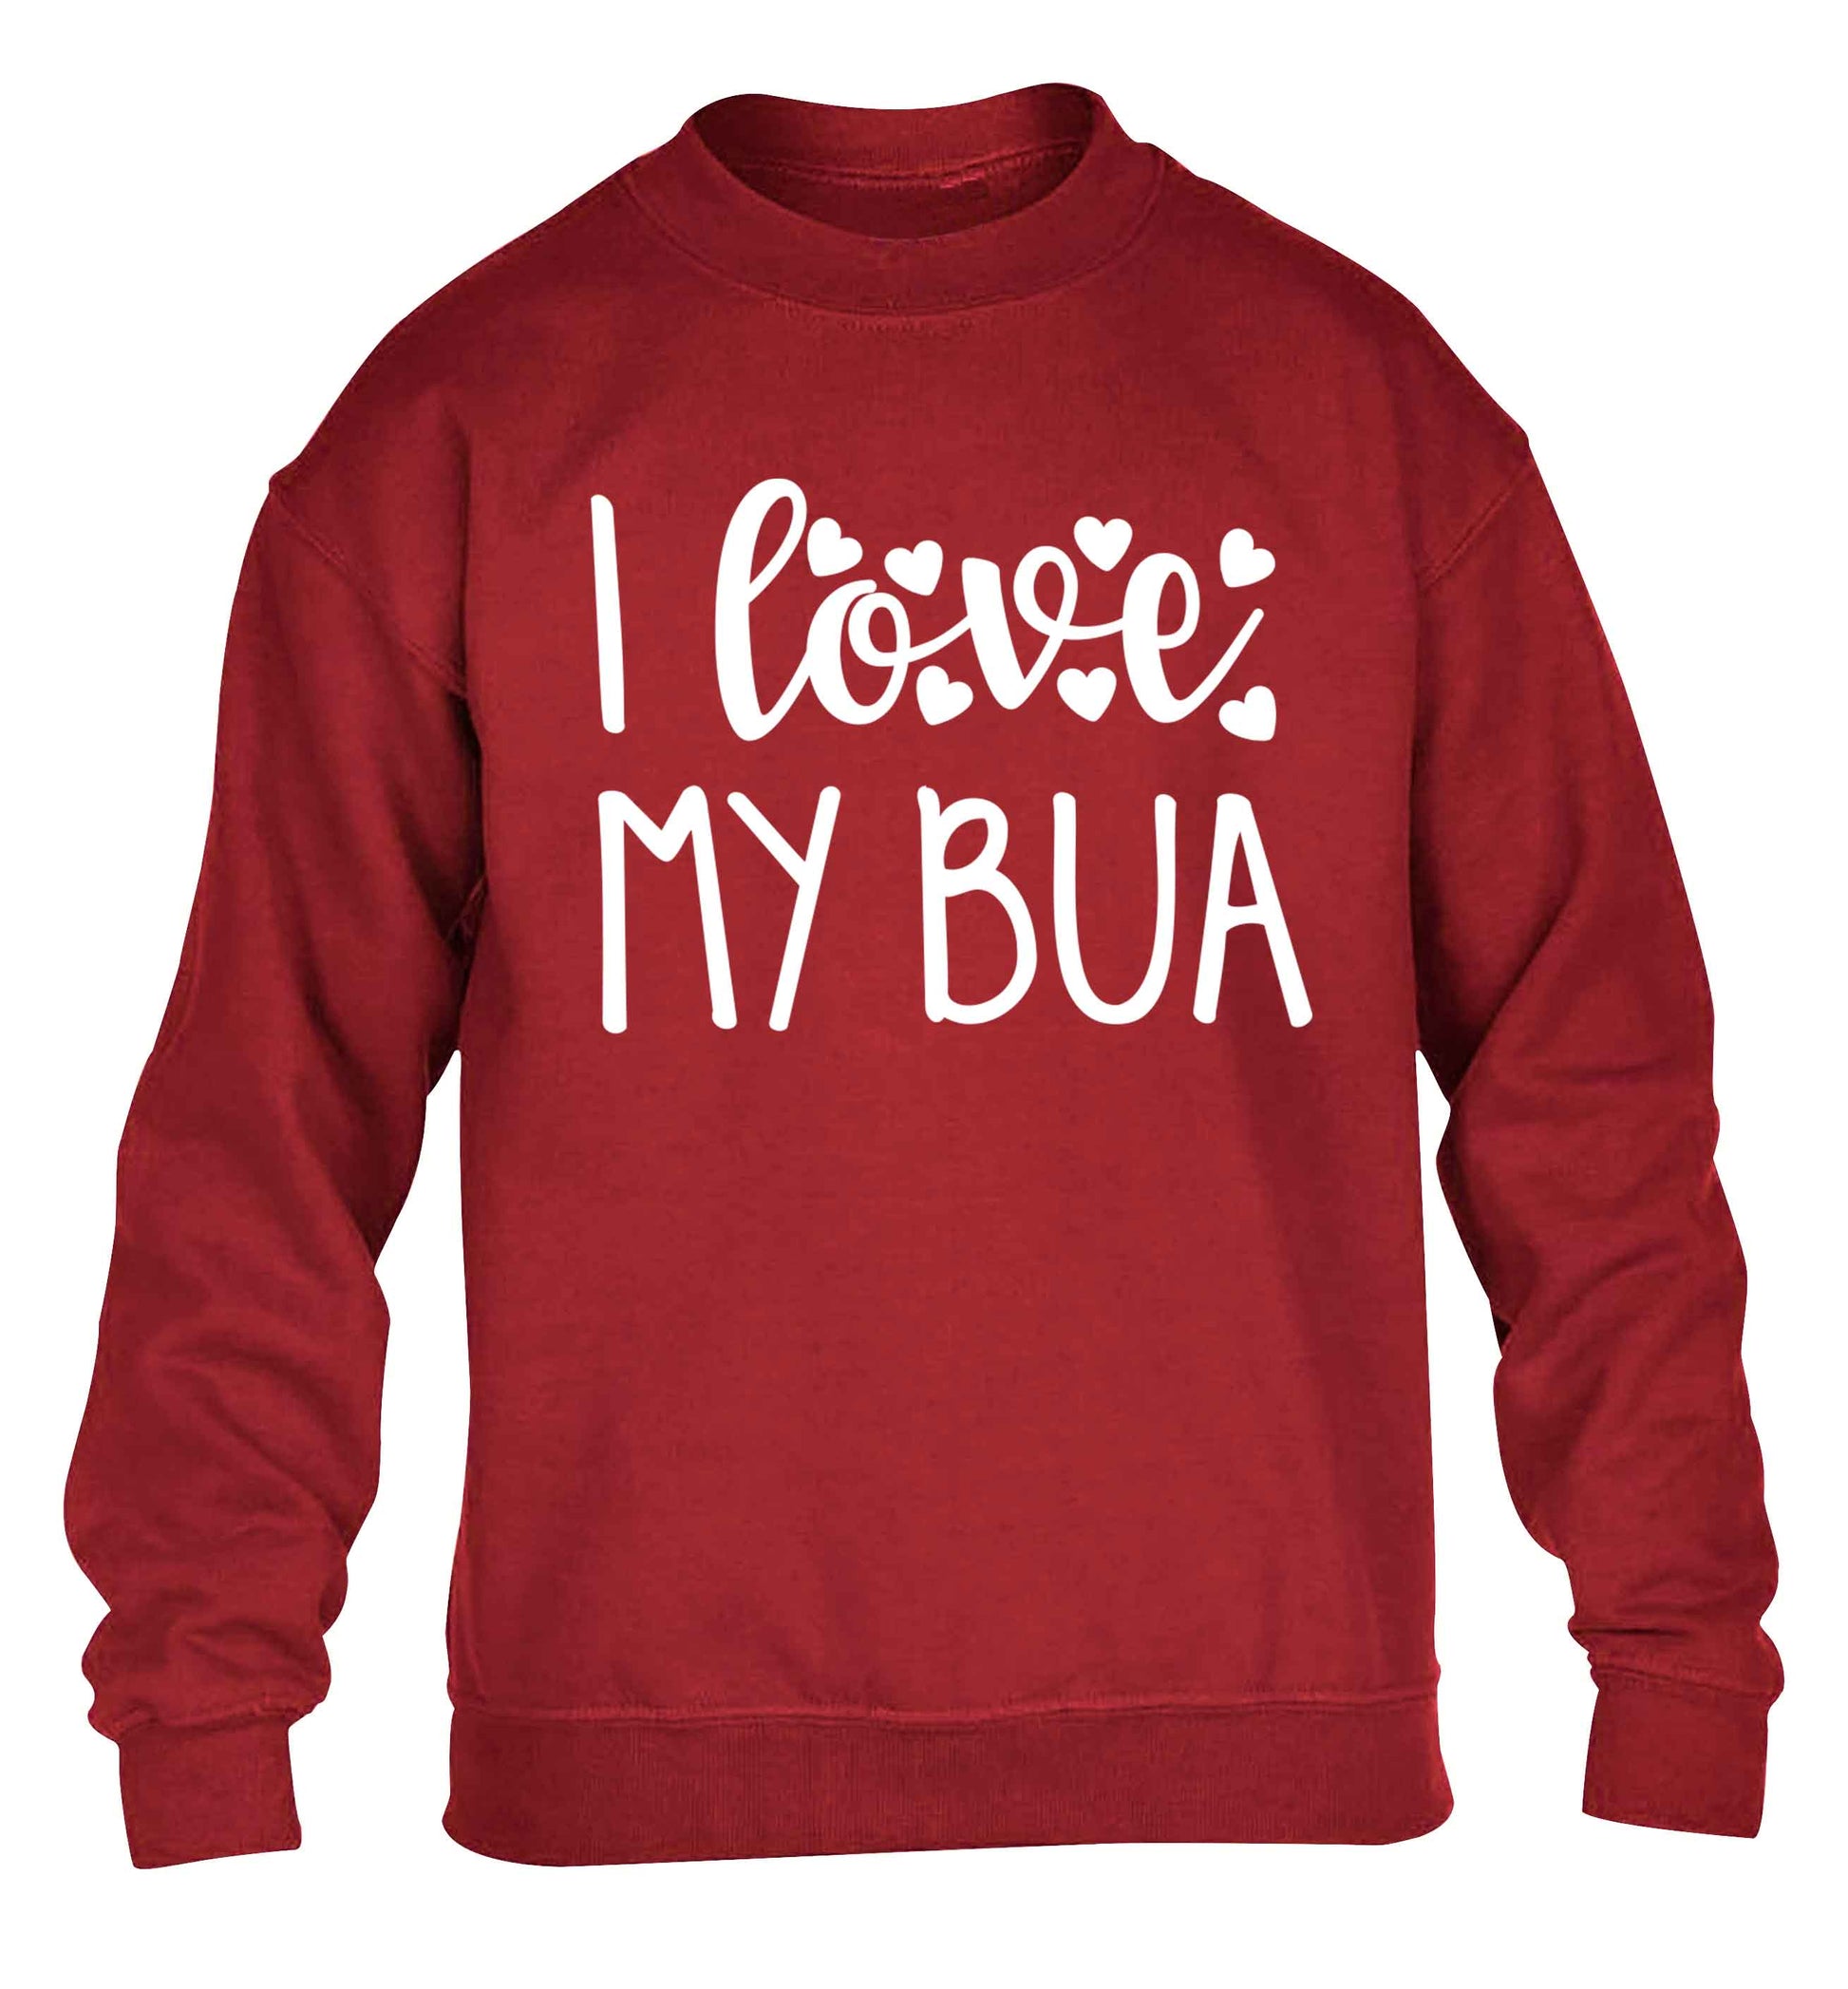 I love my bua children's grey sweater 12-13 Years